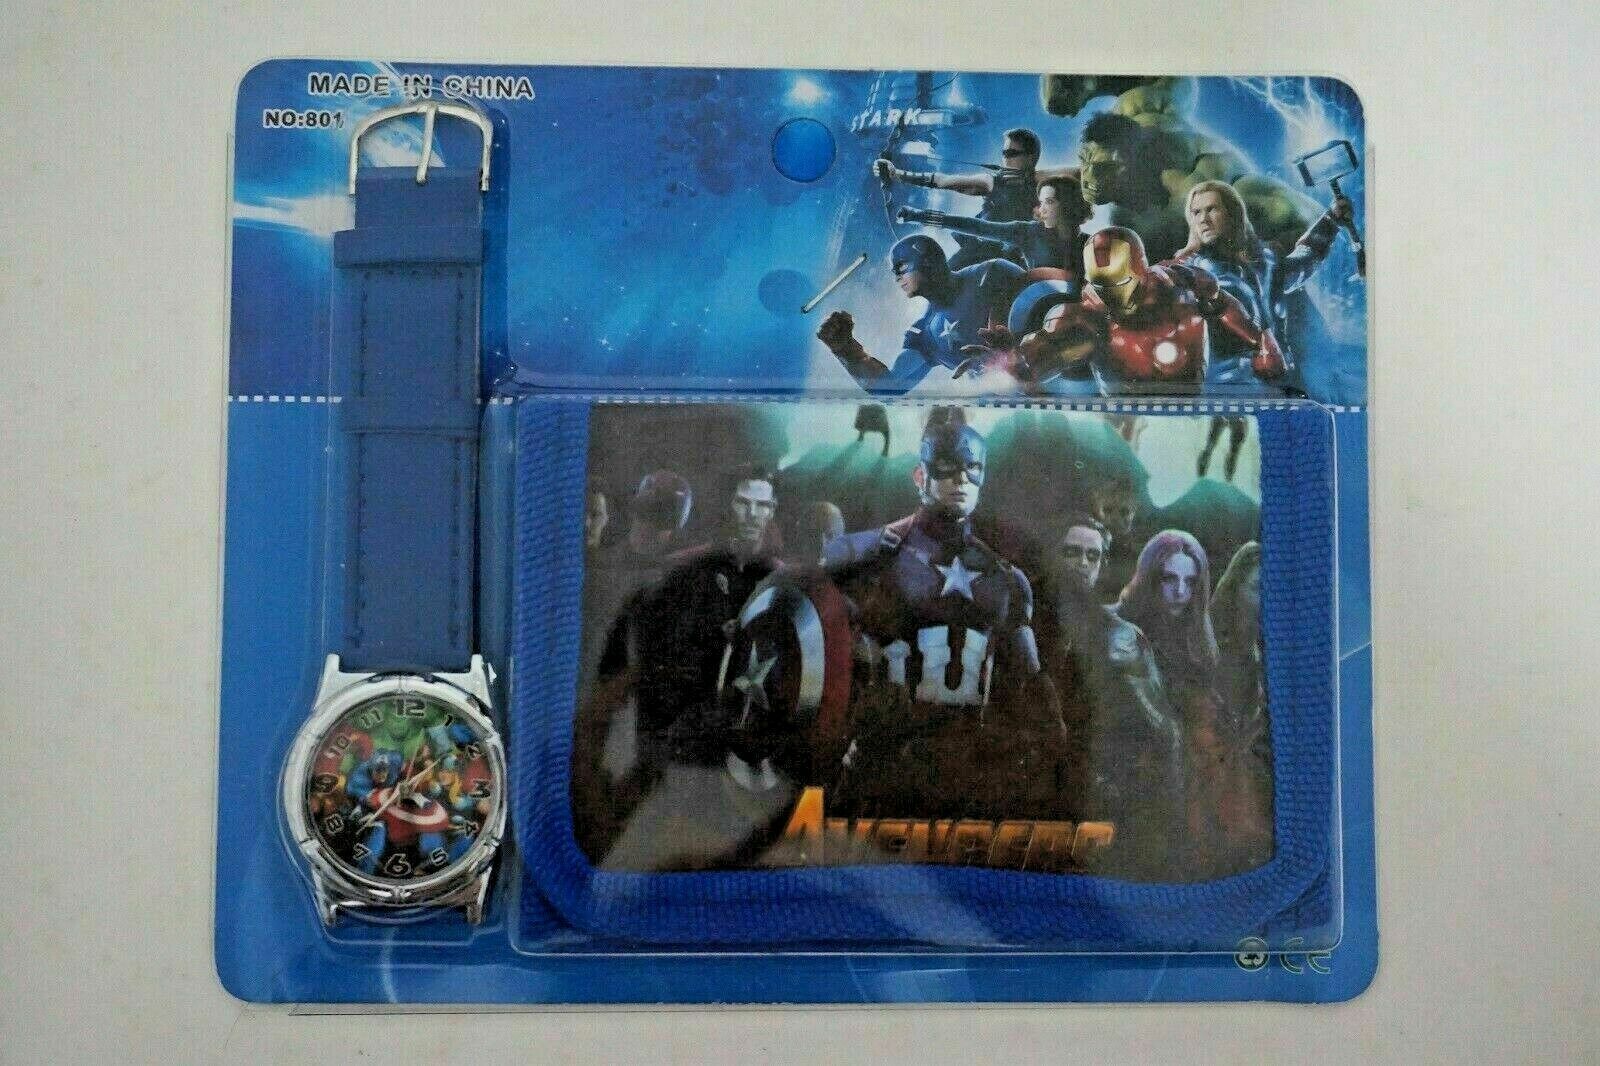 Cartoon Avengers Boy Coin Purse Bag Kid Children Watch Wallet Xmas Gift Set UK c